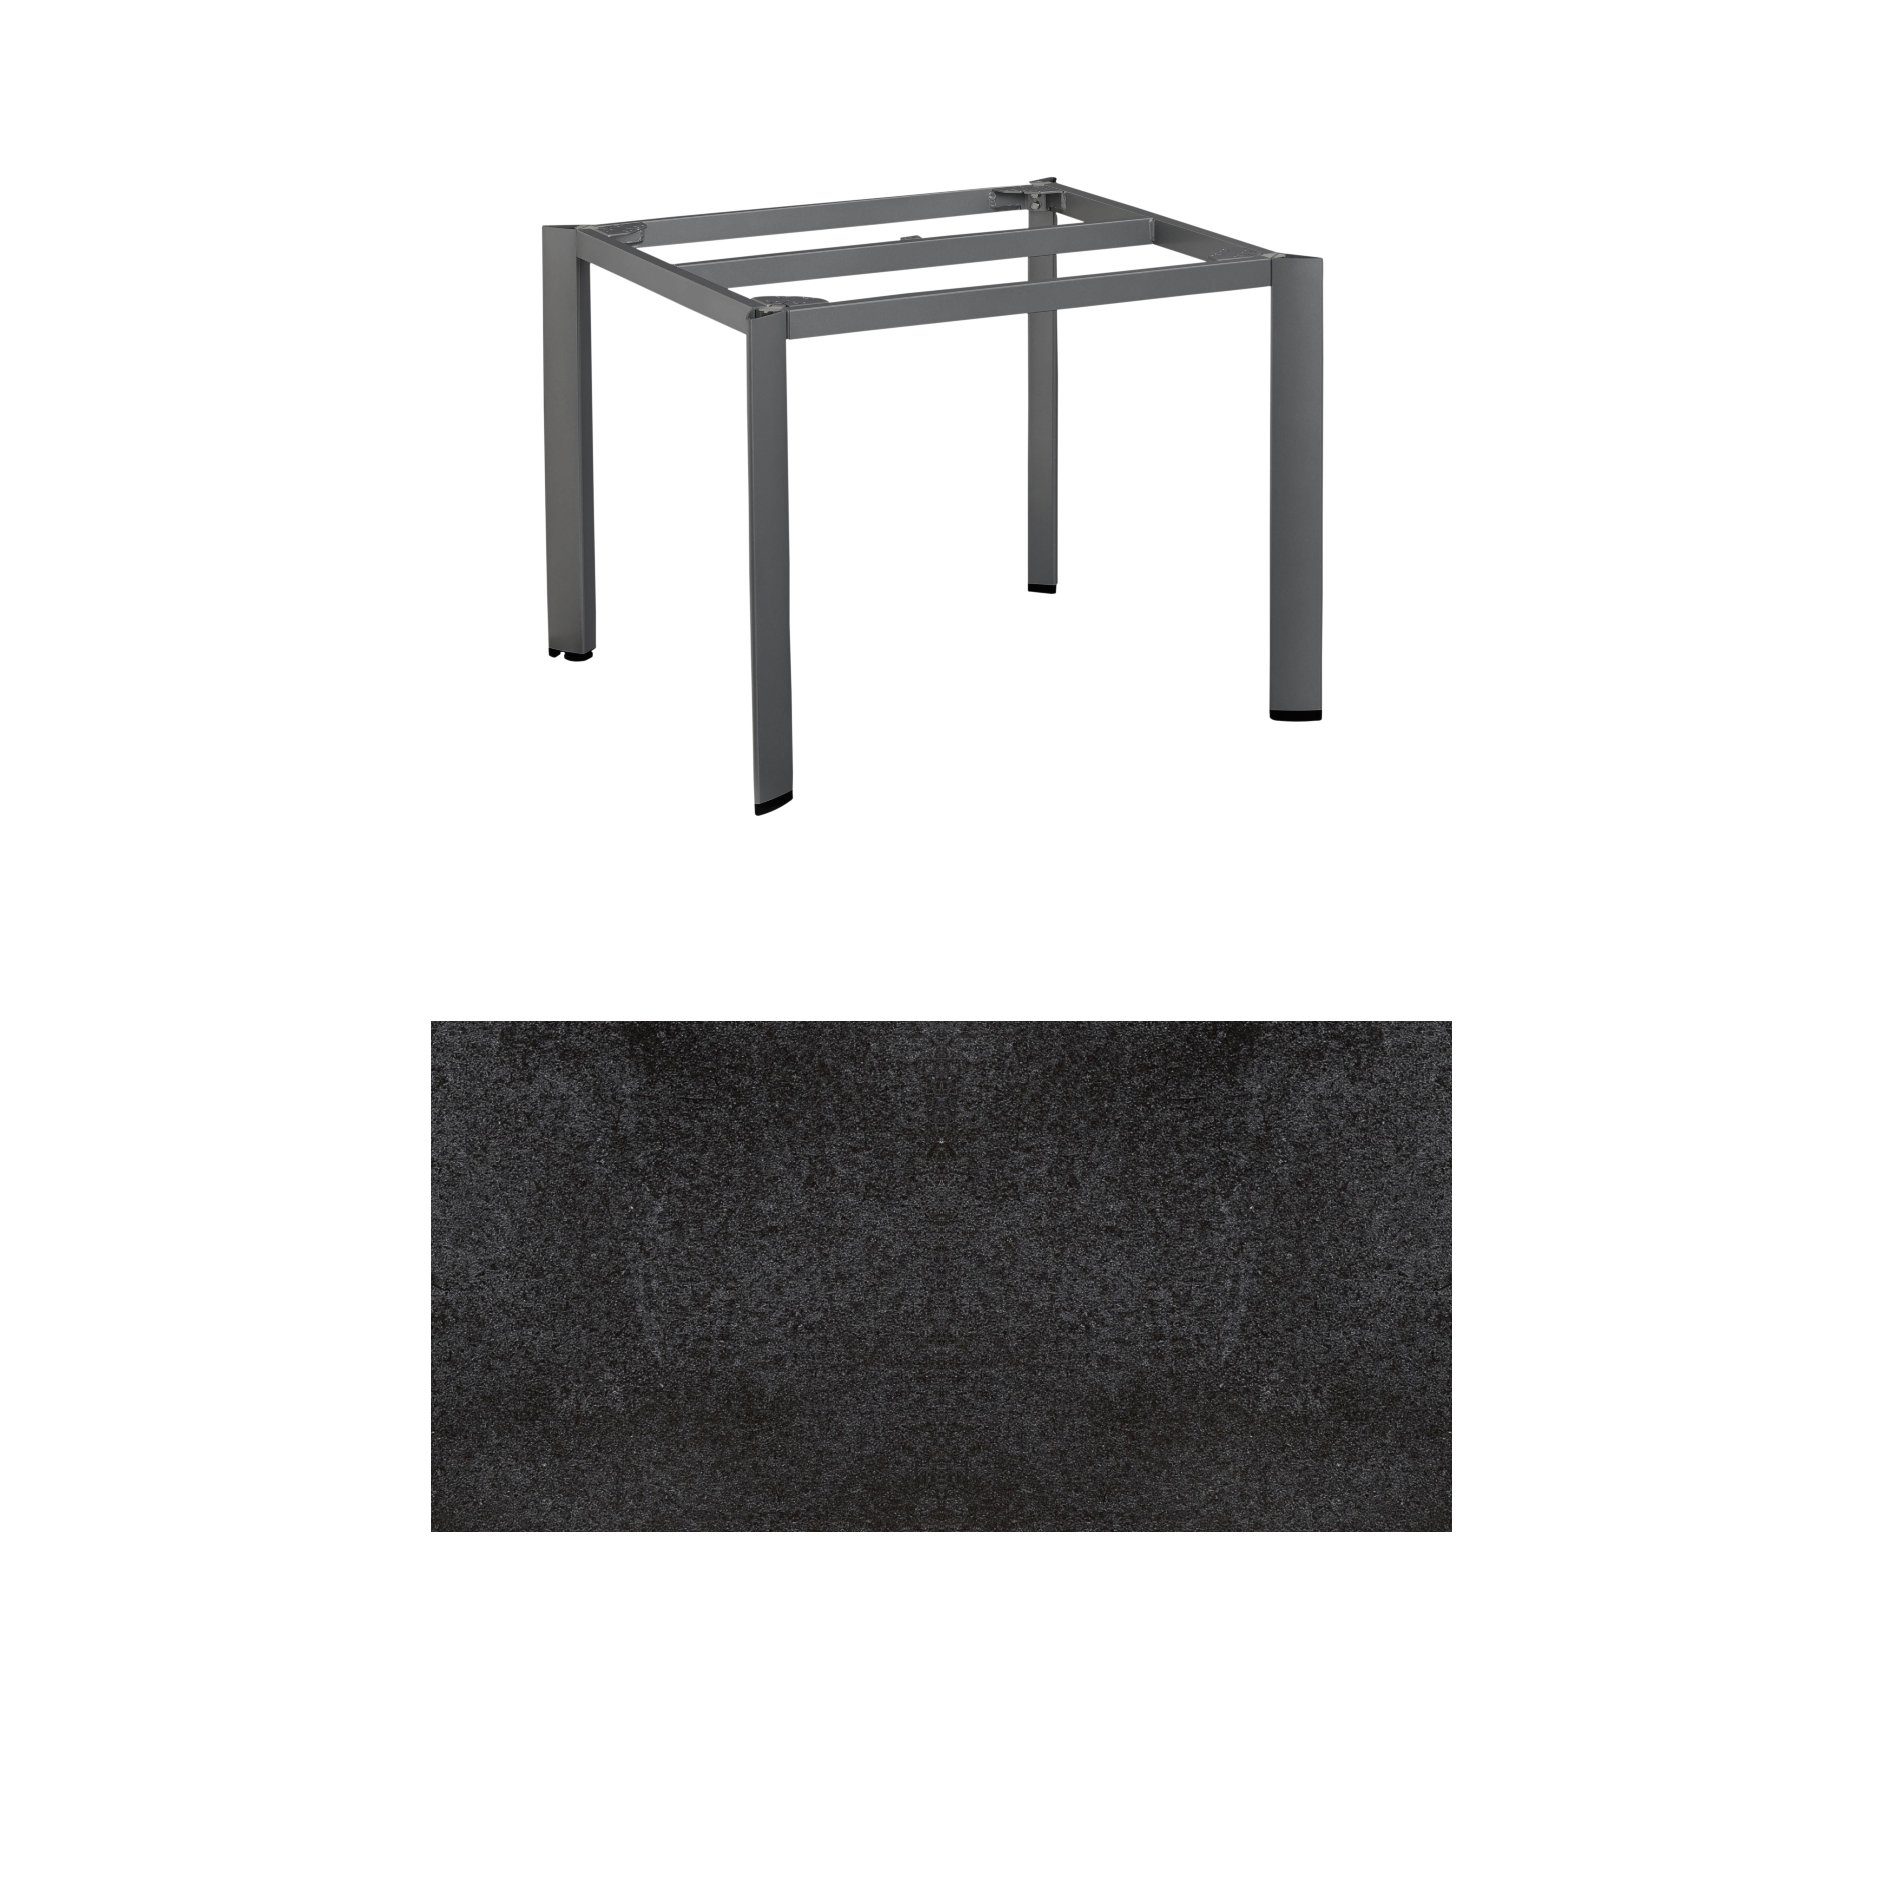 Kettler "Edge" Gartentisch, Tischgestell 95x95cm, Alu anthrazit, mit Tischplatte HPL Stahl